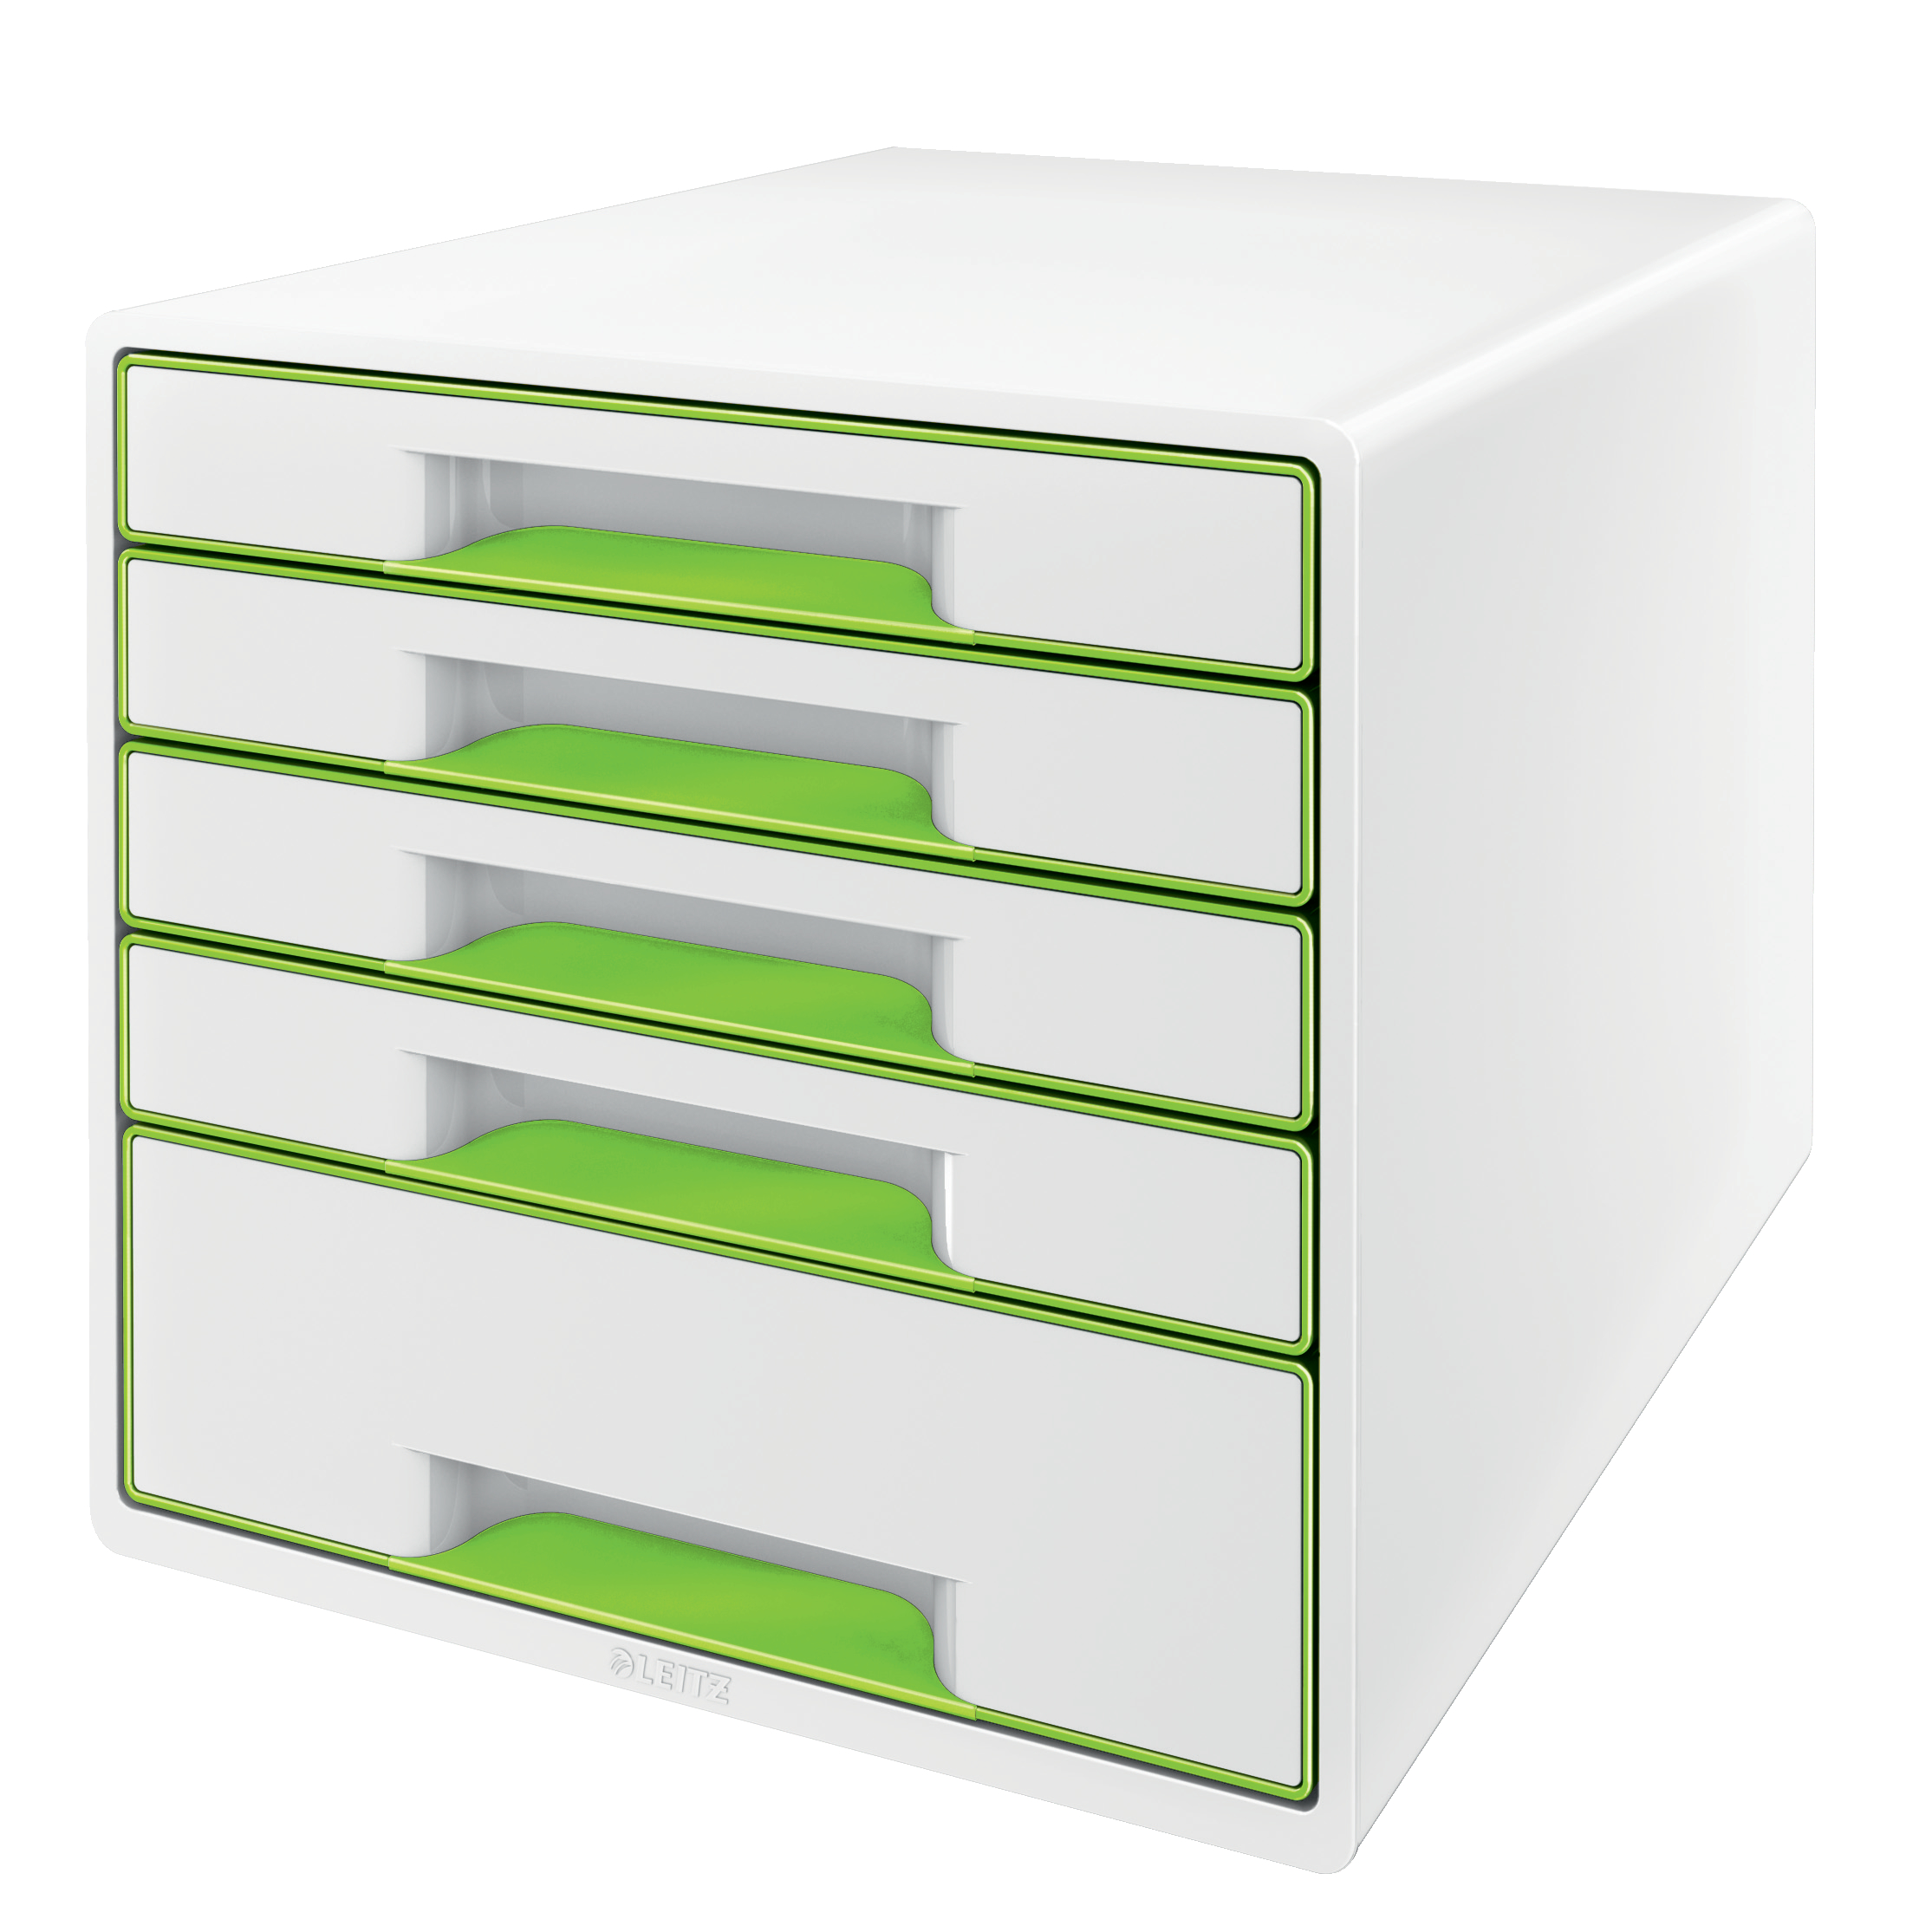 LEITZ Set tiroirs WOW Cube A4 5214-20-54 blanc/vert, 5 tiroirs